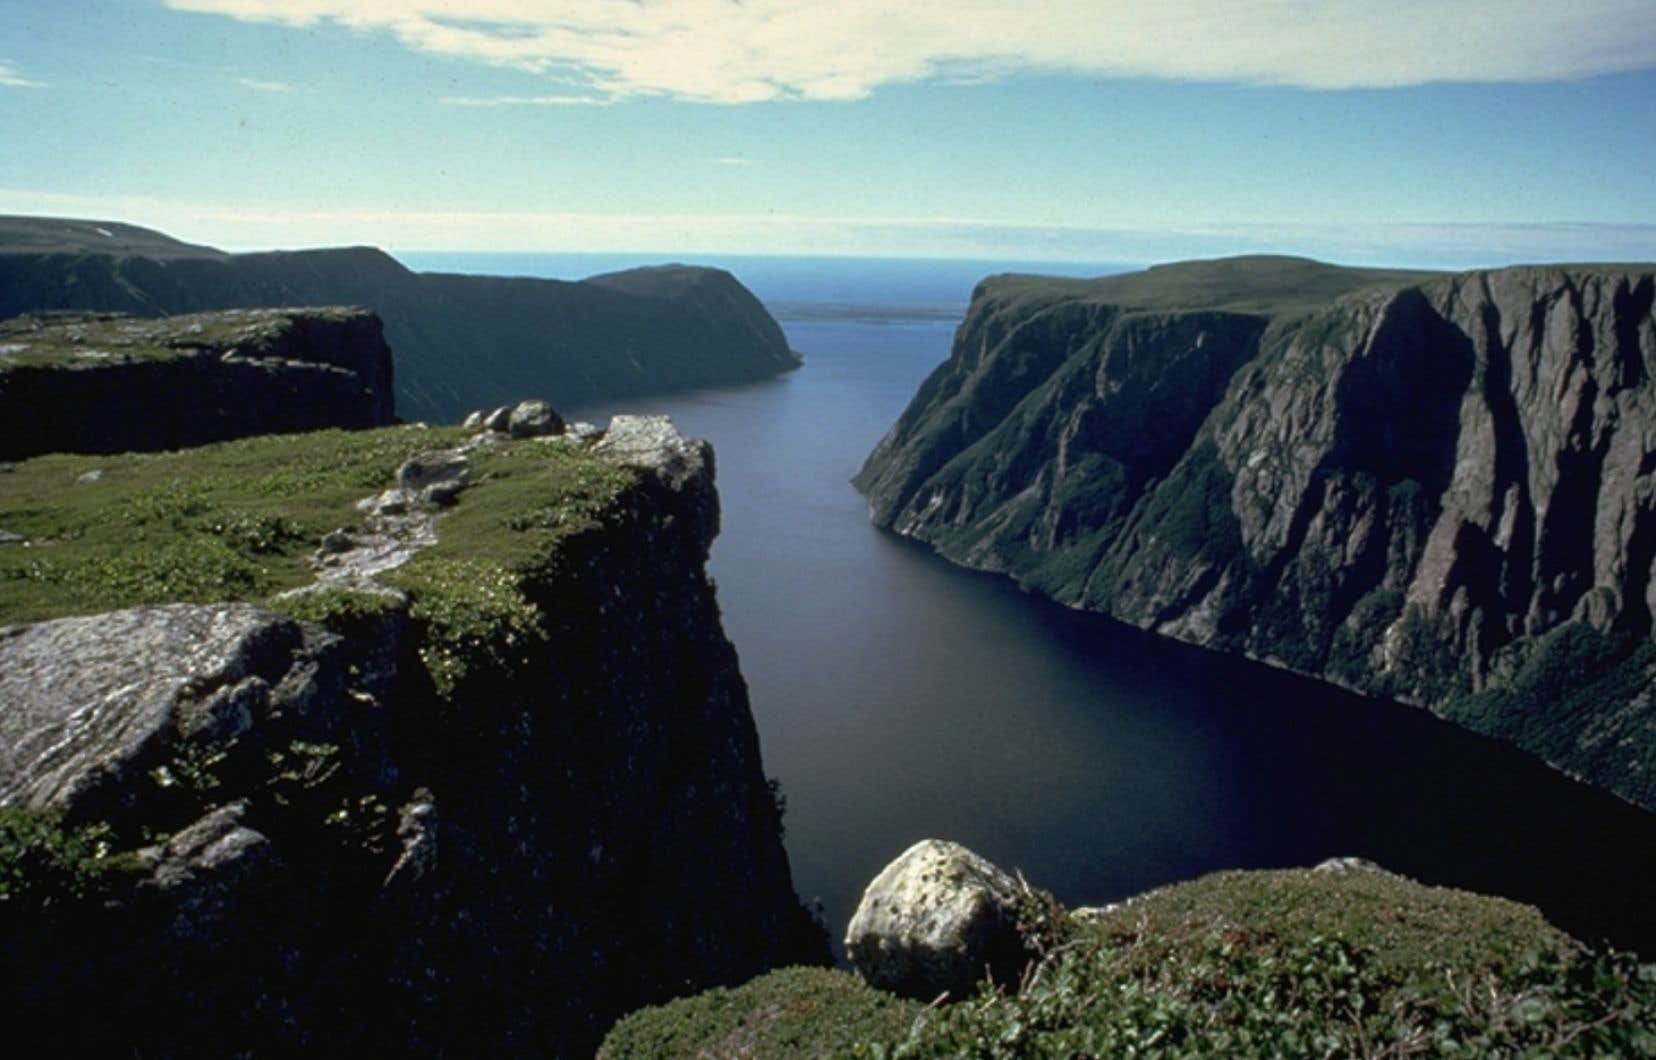 Ньюфаундленд длина реки. Грос-Морн ньюфаундленд и лабрадор. Национальный парк Грос-Морн. Ньюфаундленд остров. Национальный парк Грос Морн Канада.